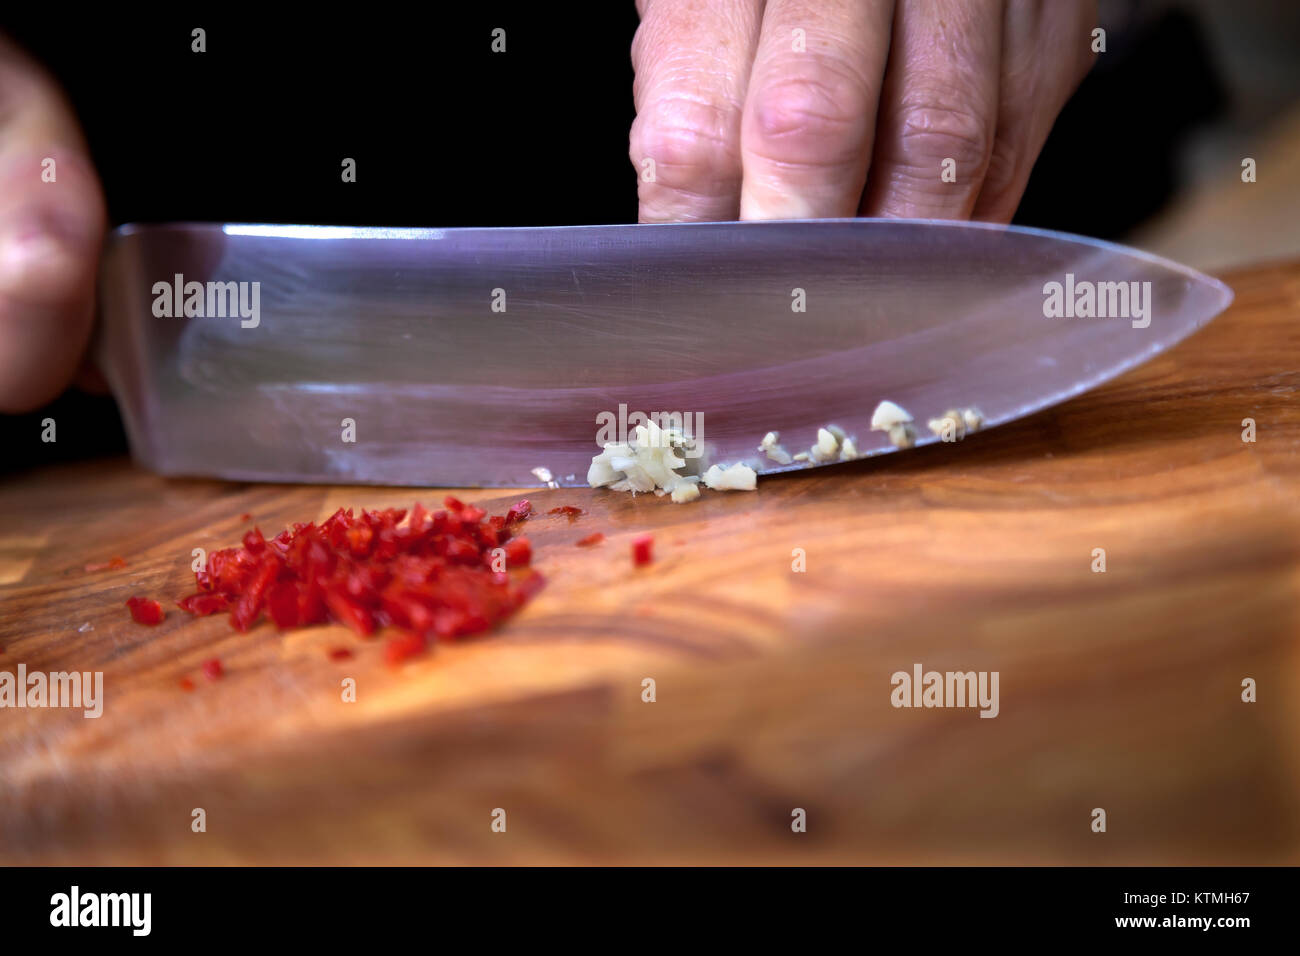 Essen Vorbereitung - würfeln Knoblauch auf Schneidebrett Stockfoto